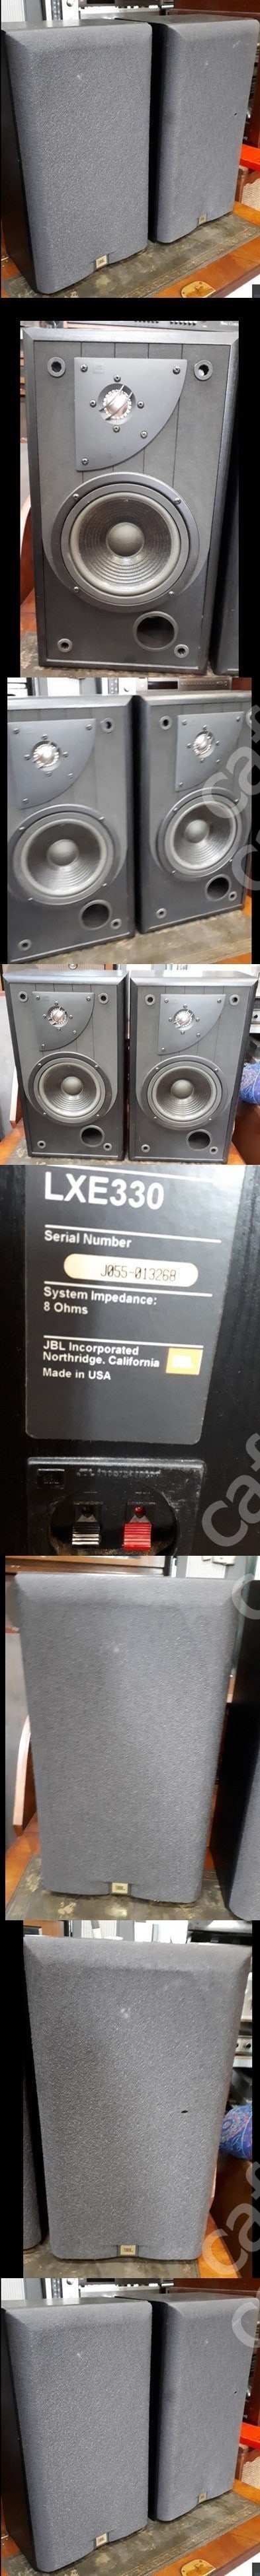 U.S.A-JBL LXE 330스피커